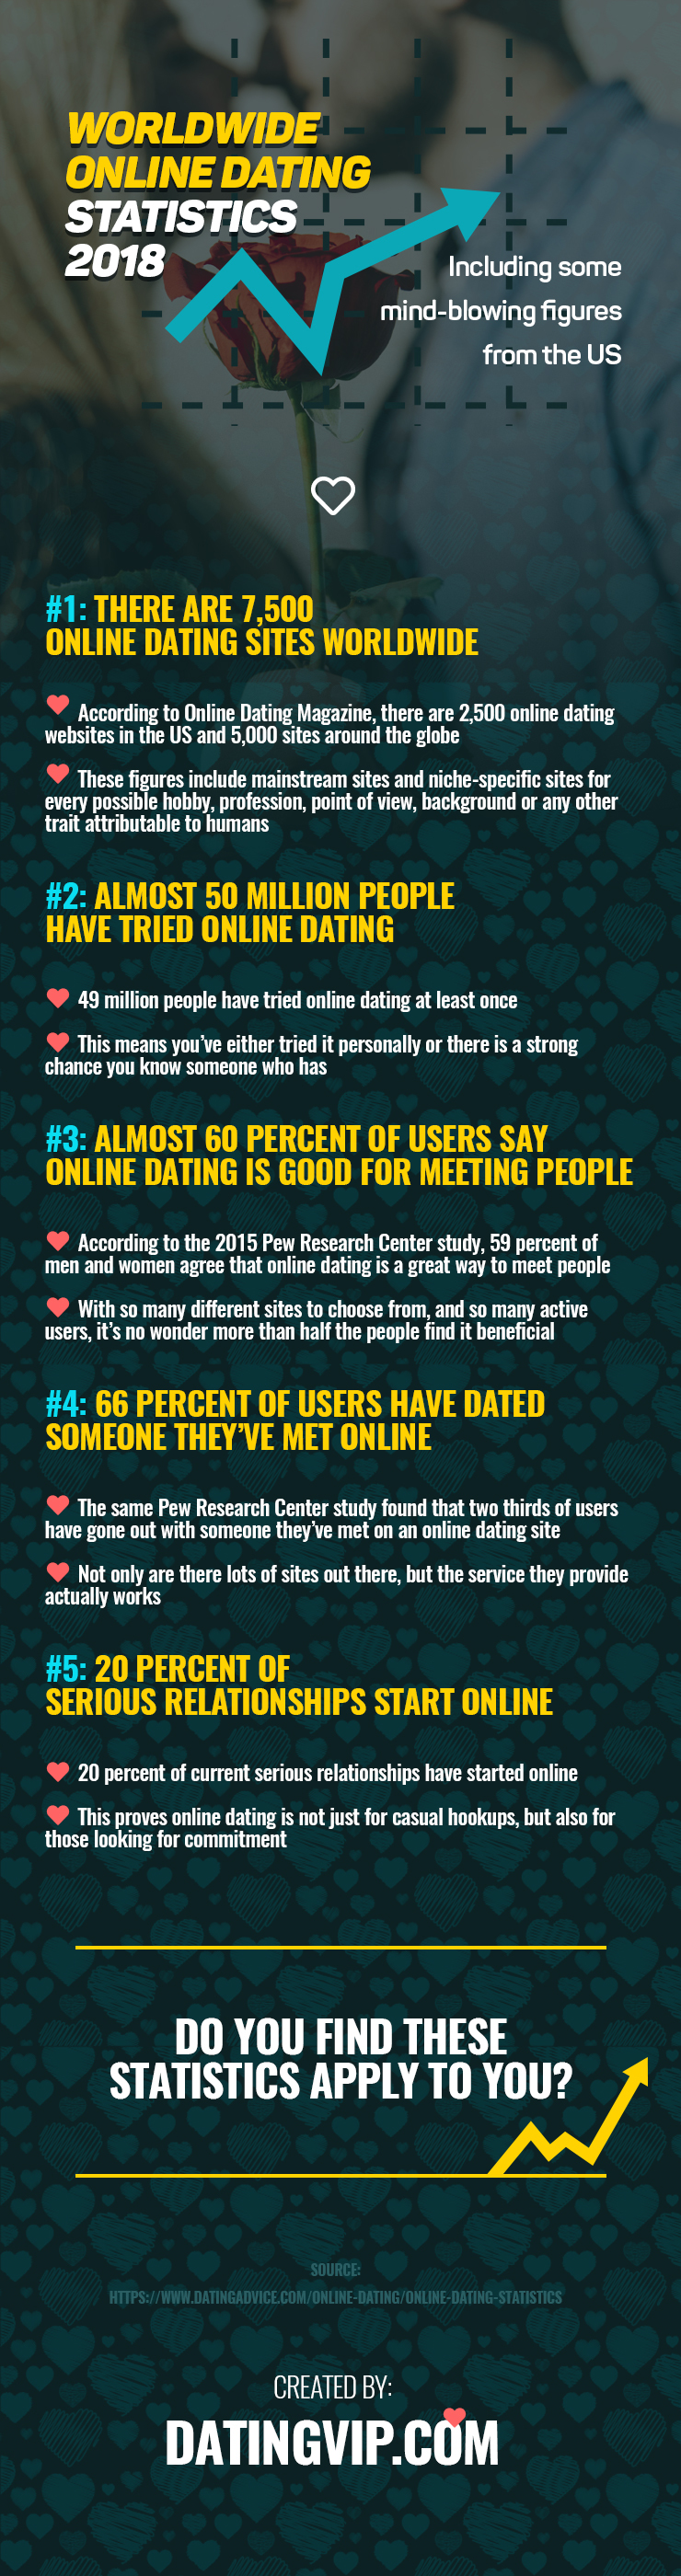 Worldwide Online Dating Statistics